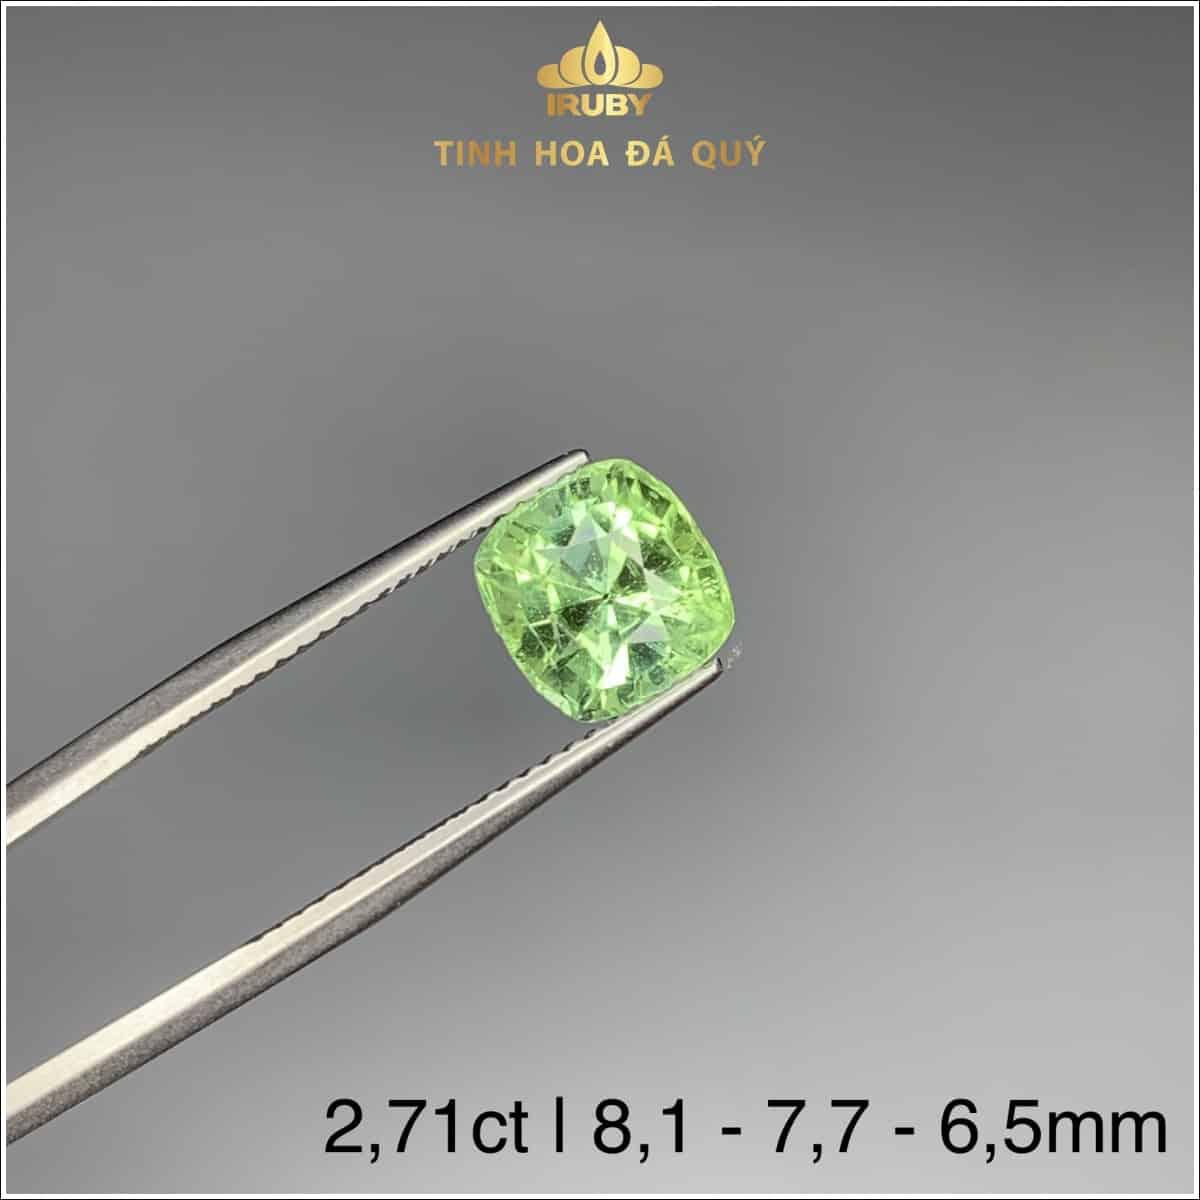 Viên Tourmaline xanh lục tươi khối tiêu chuẩn quốc tế 2,71ct - IRTM 233271 hình ảnh 4